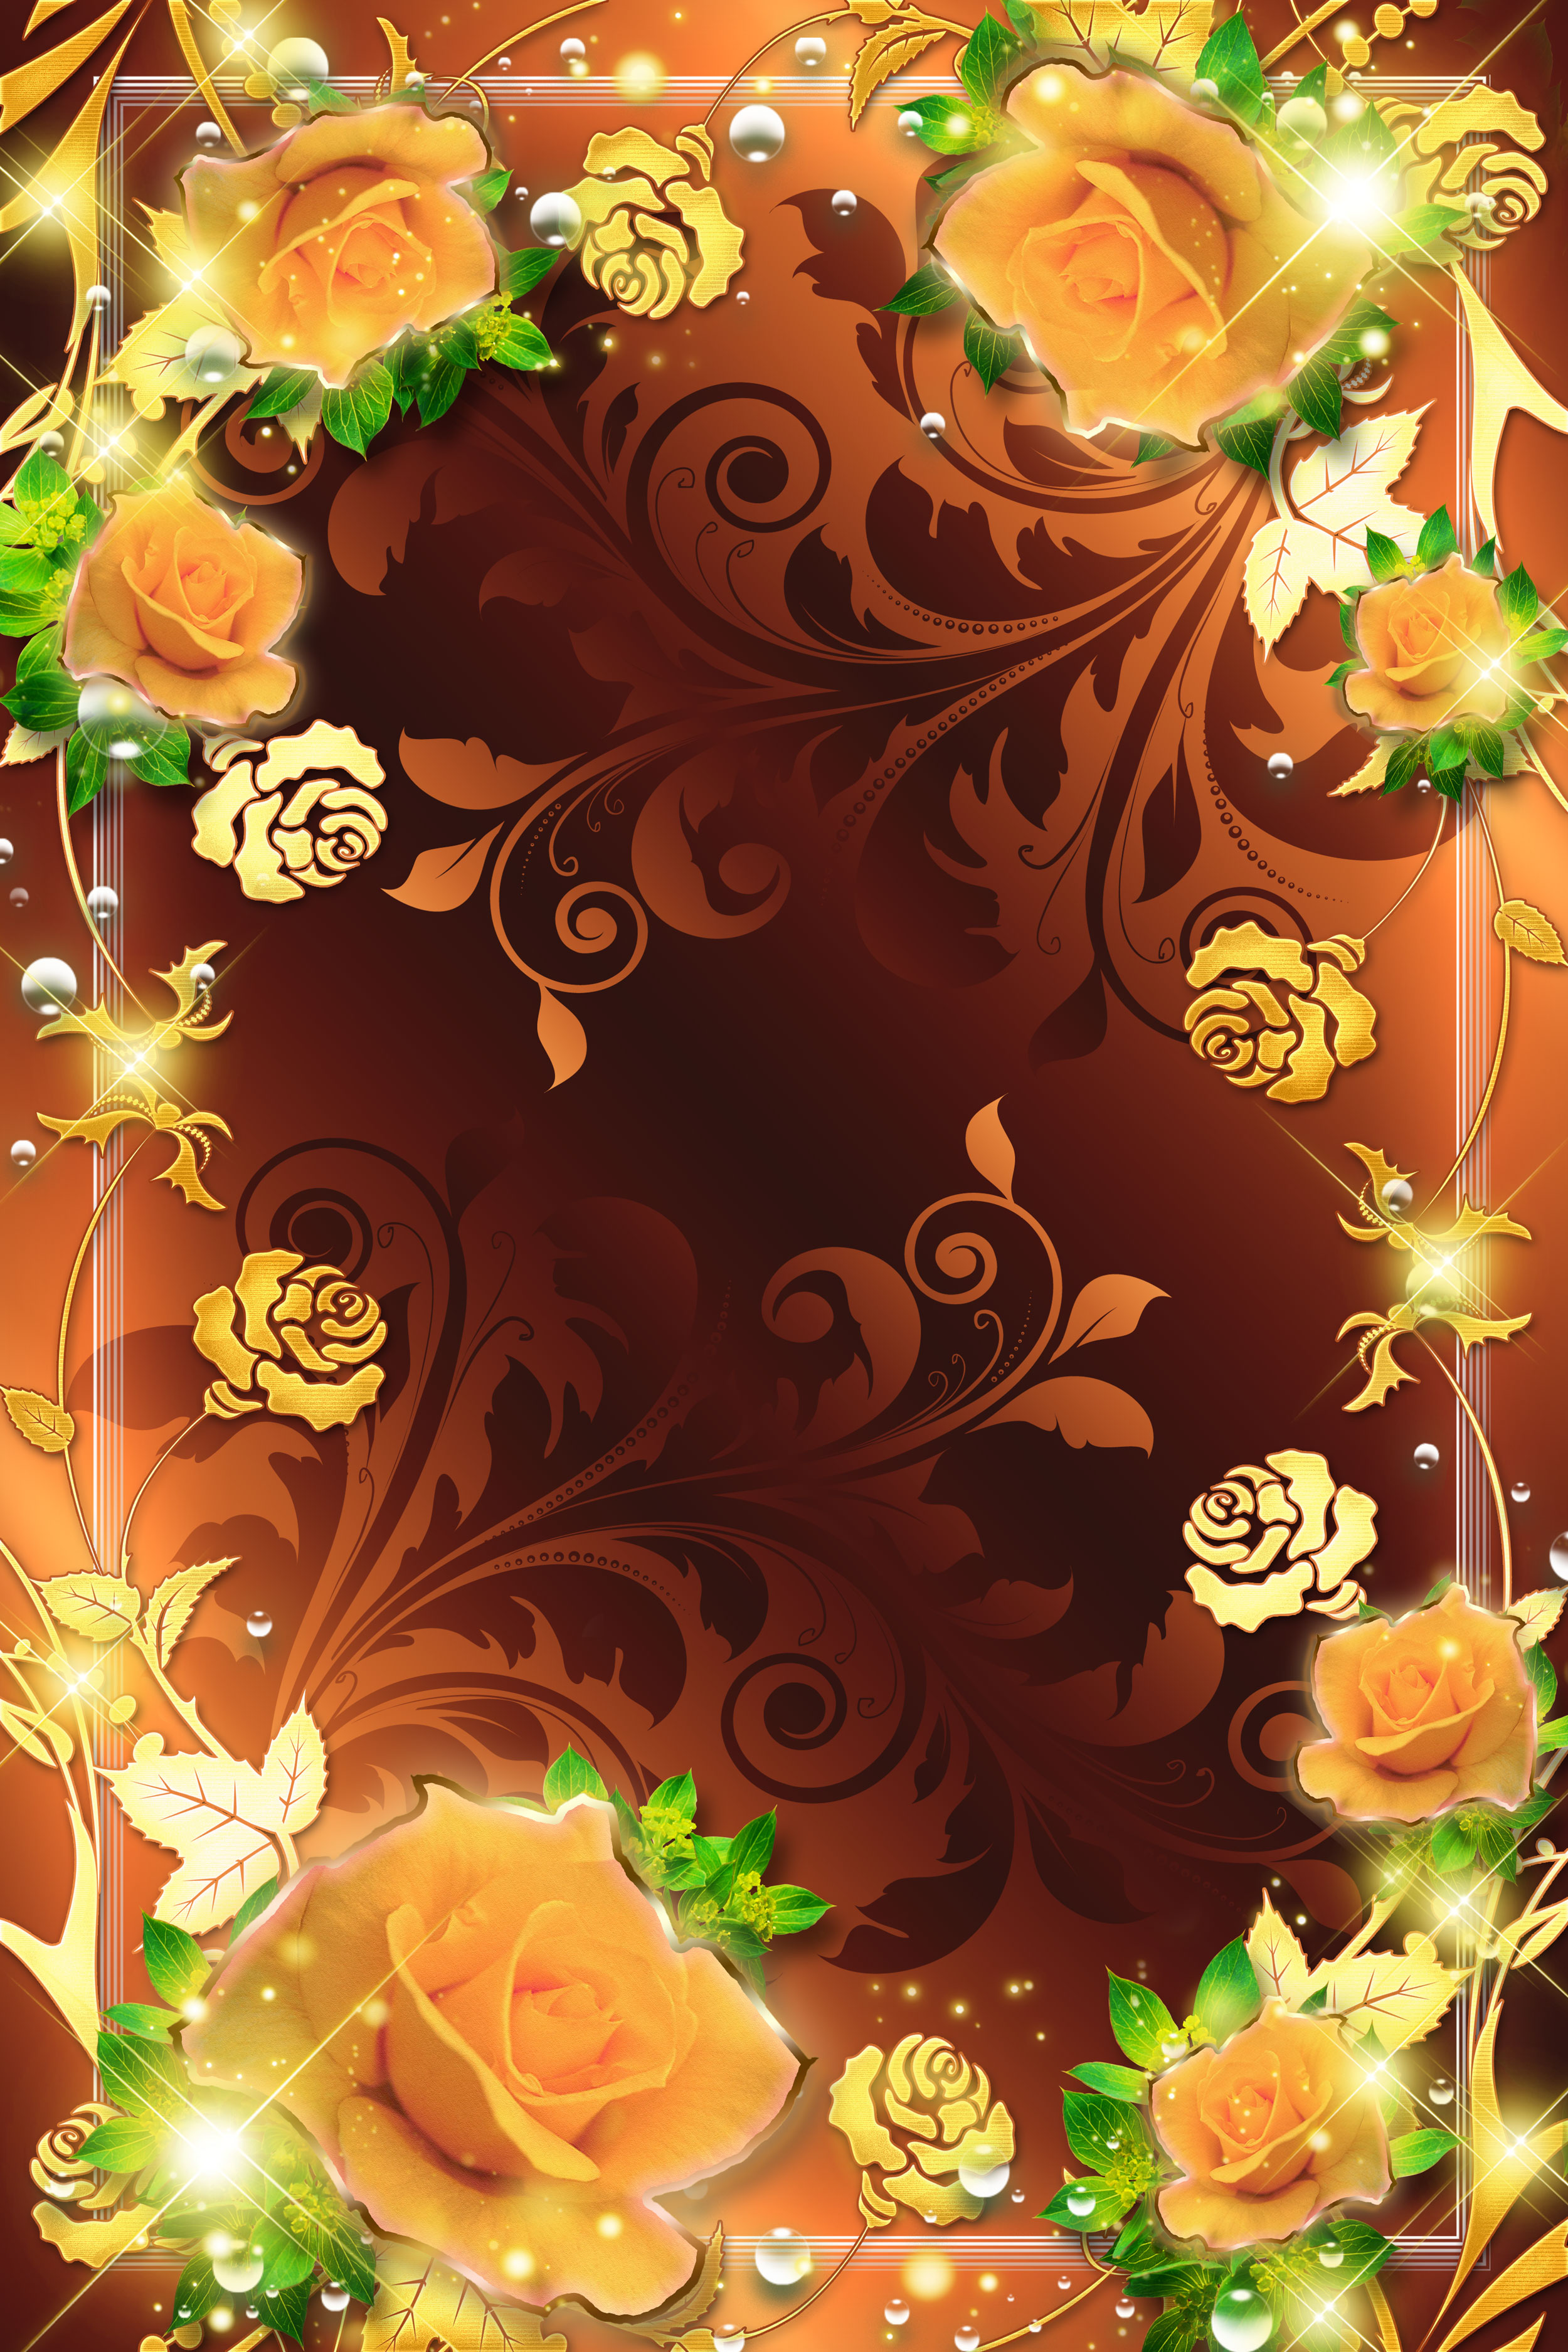 バラの画像 イラスト 壁紙 背景用 No 625 オレンジのバラ 金色